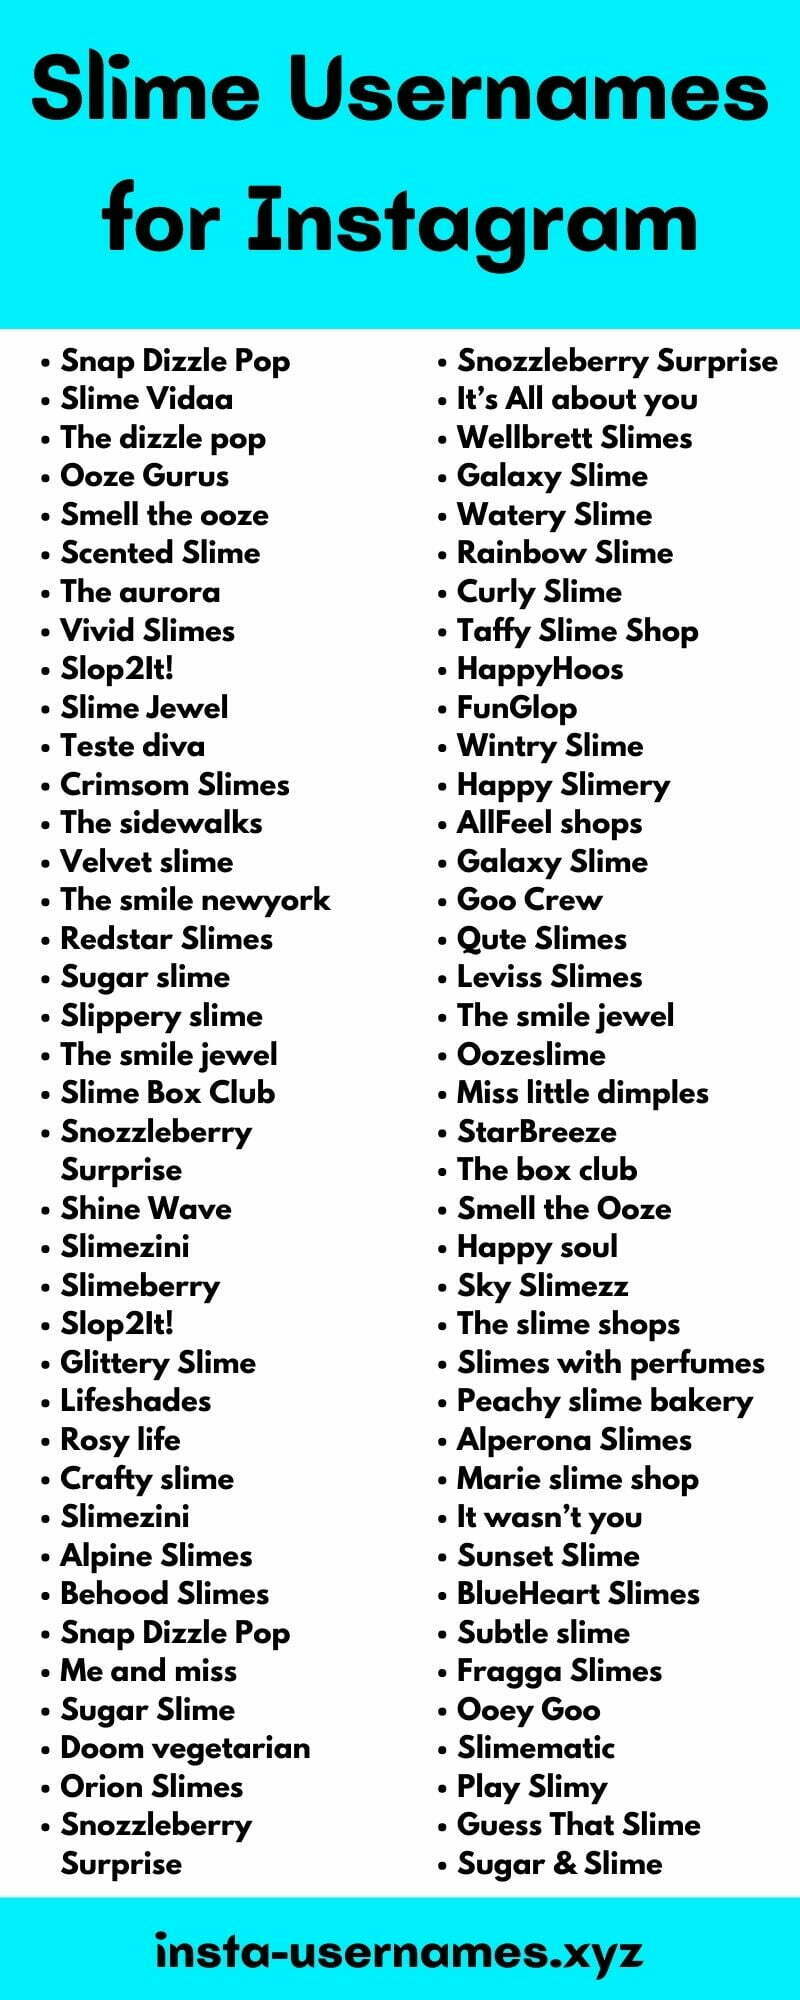 Slime Usernames for Instagram - Slime Usernames for Instagram [2021]